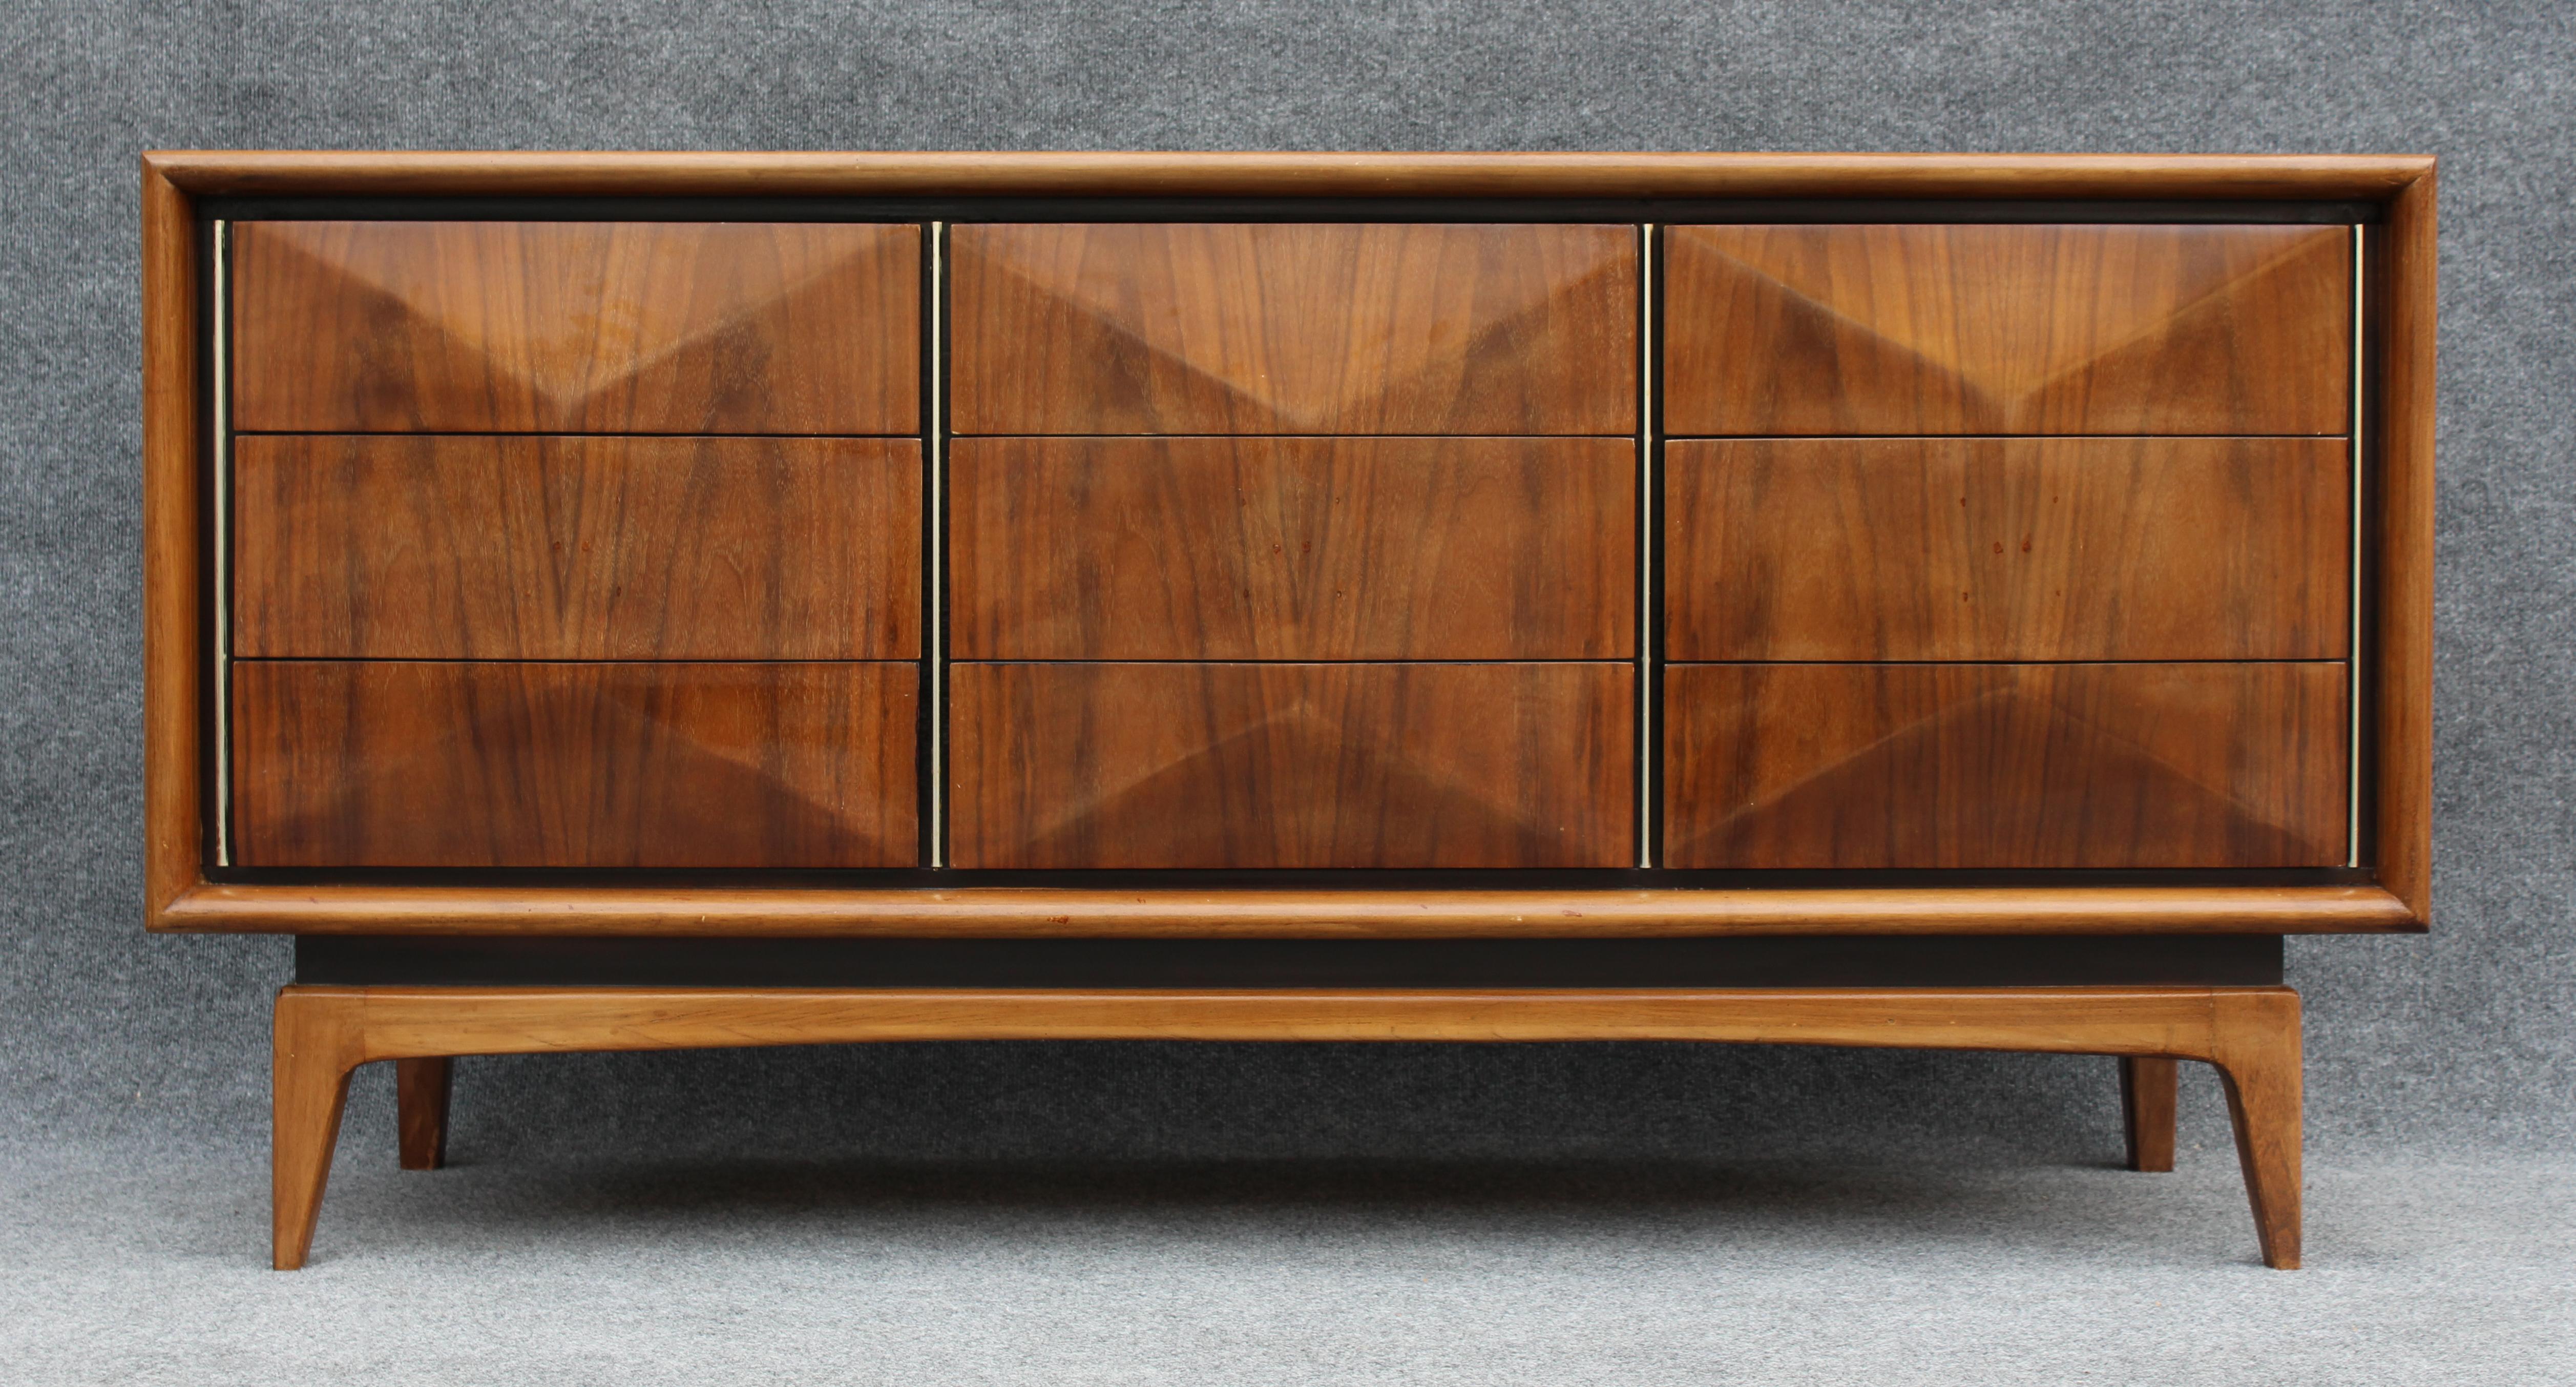 Die Mid-Century Modern united furniture company vintage circa 1950s nine-drawer triple dresser eignet sich gut für das Schlafzimmer, wie ursprünglich beabsichtigt, oder für das Wohnzimmer, das als Unterhaltungskonsole umfunktioniert wird. Das lange,